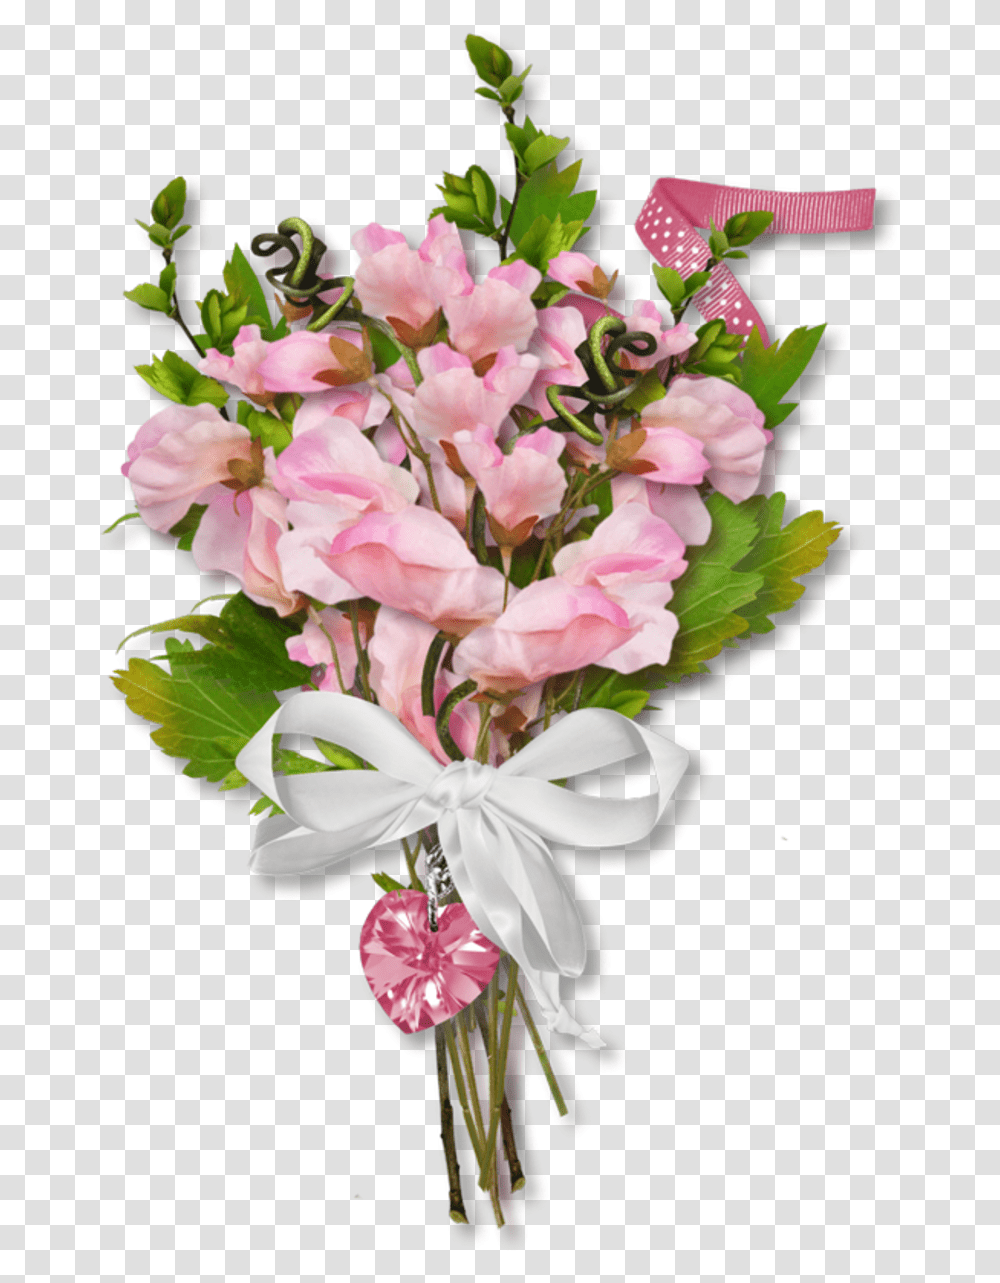 Floral Design Cut Flowers Flower Bouquet Artificial Cut Flowers, Plant, Blossom, Flower Arrangement Transparent Png